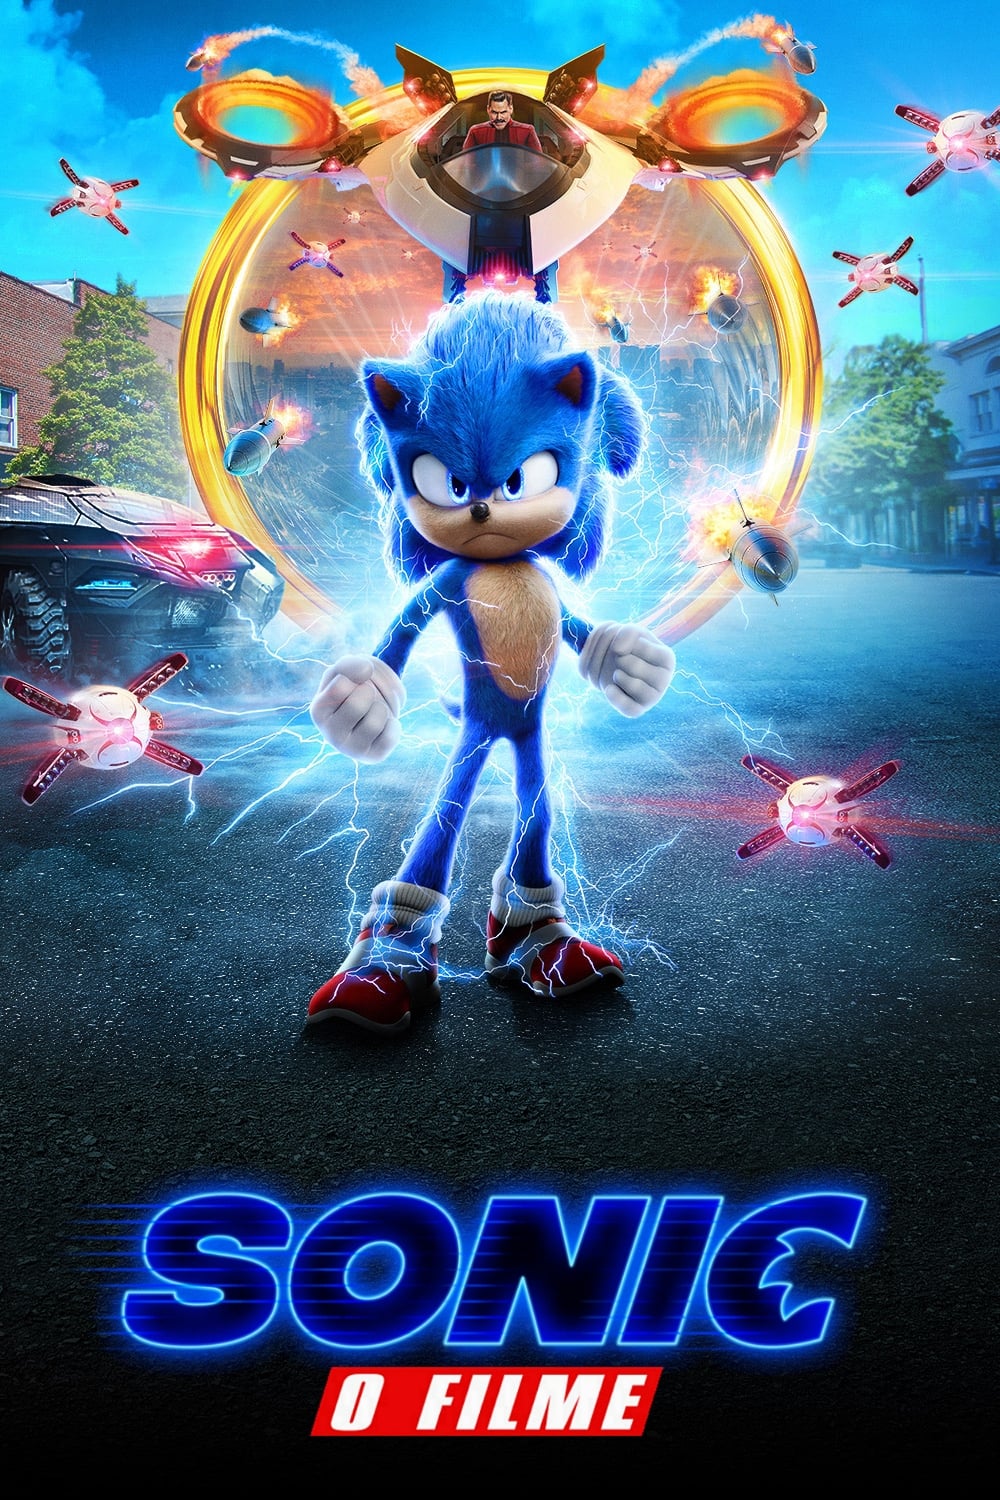 Sonic: O Filme (2020) - Imagens de fundo — The Movie Database (TMDB)